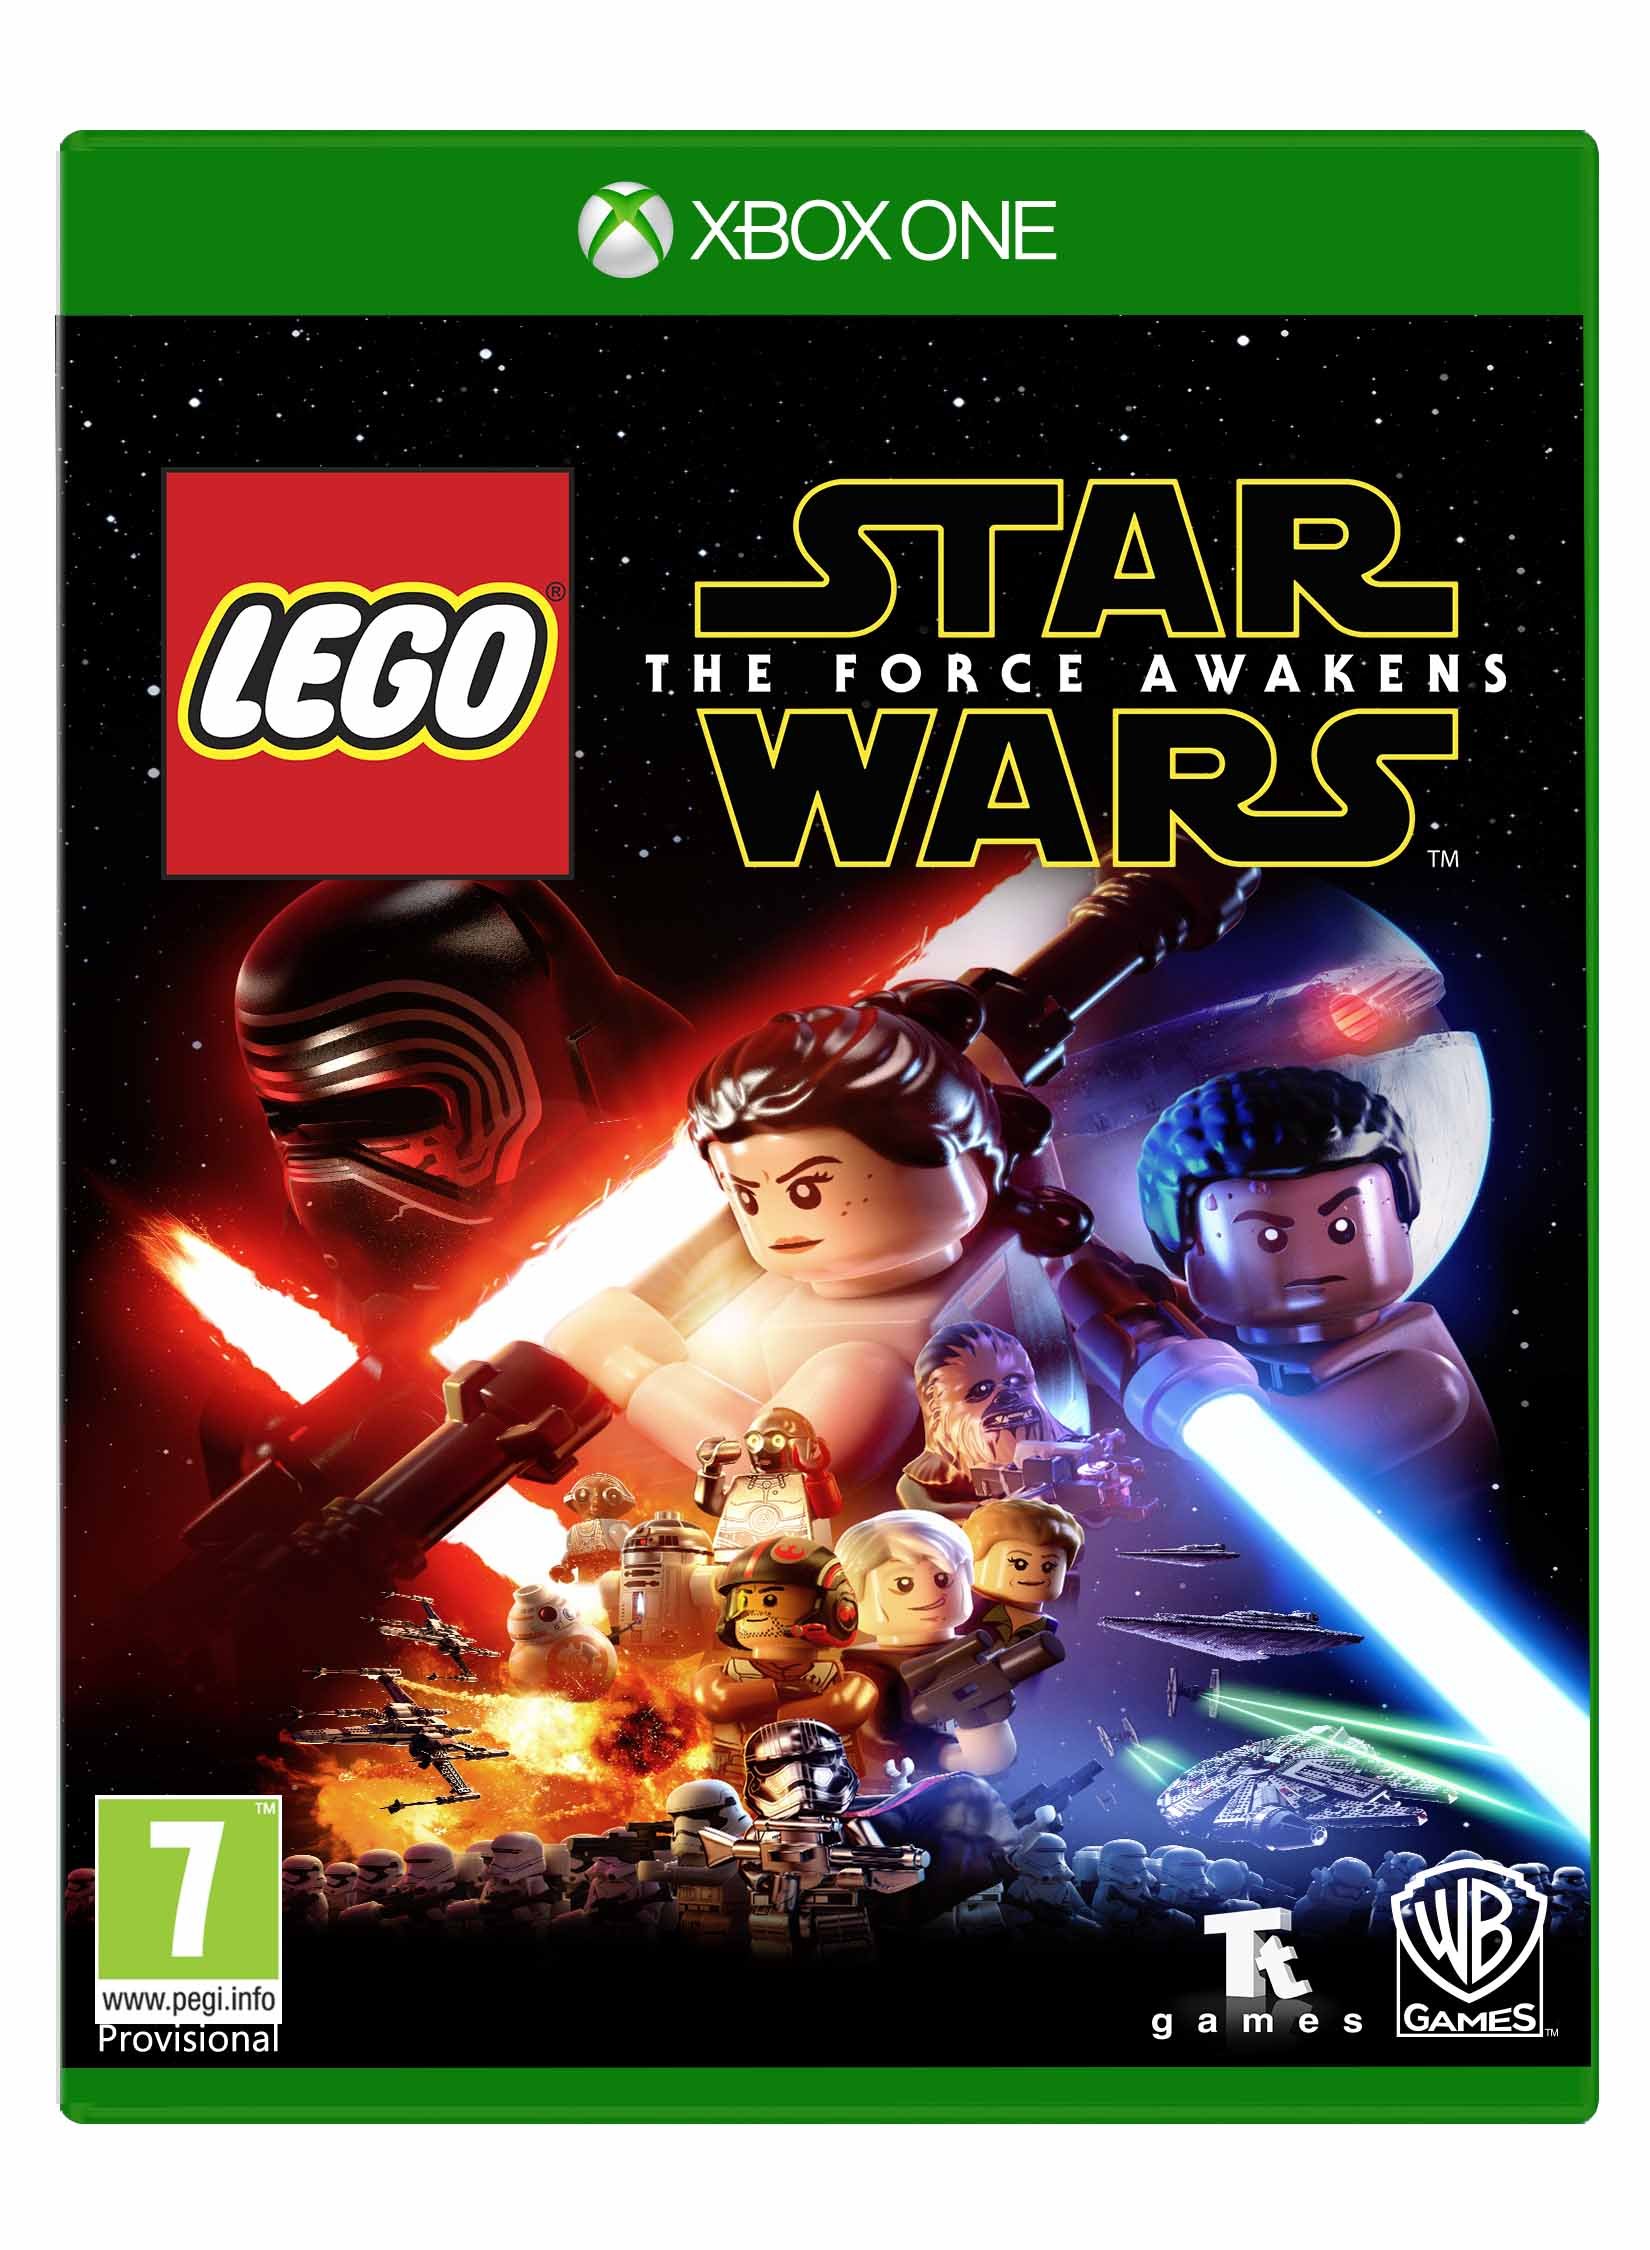 LEGO Star Wars: The Force Awakens (UK/DK) von Star Wars